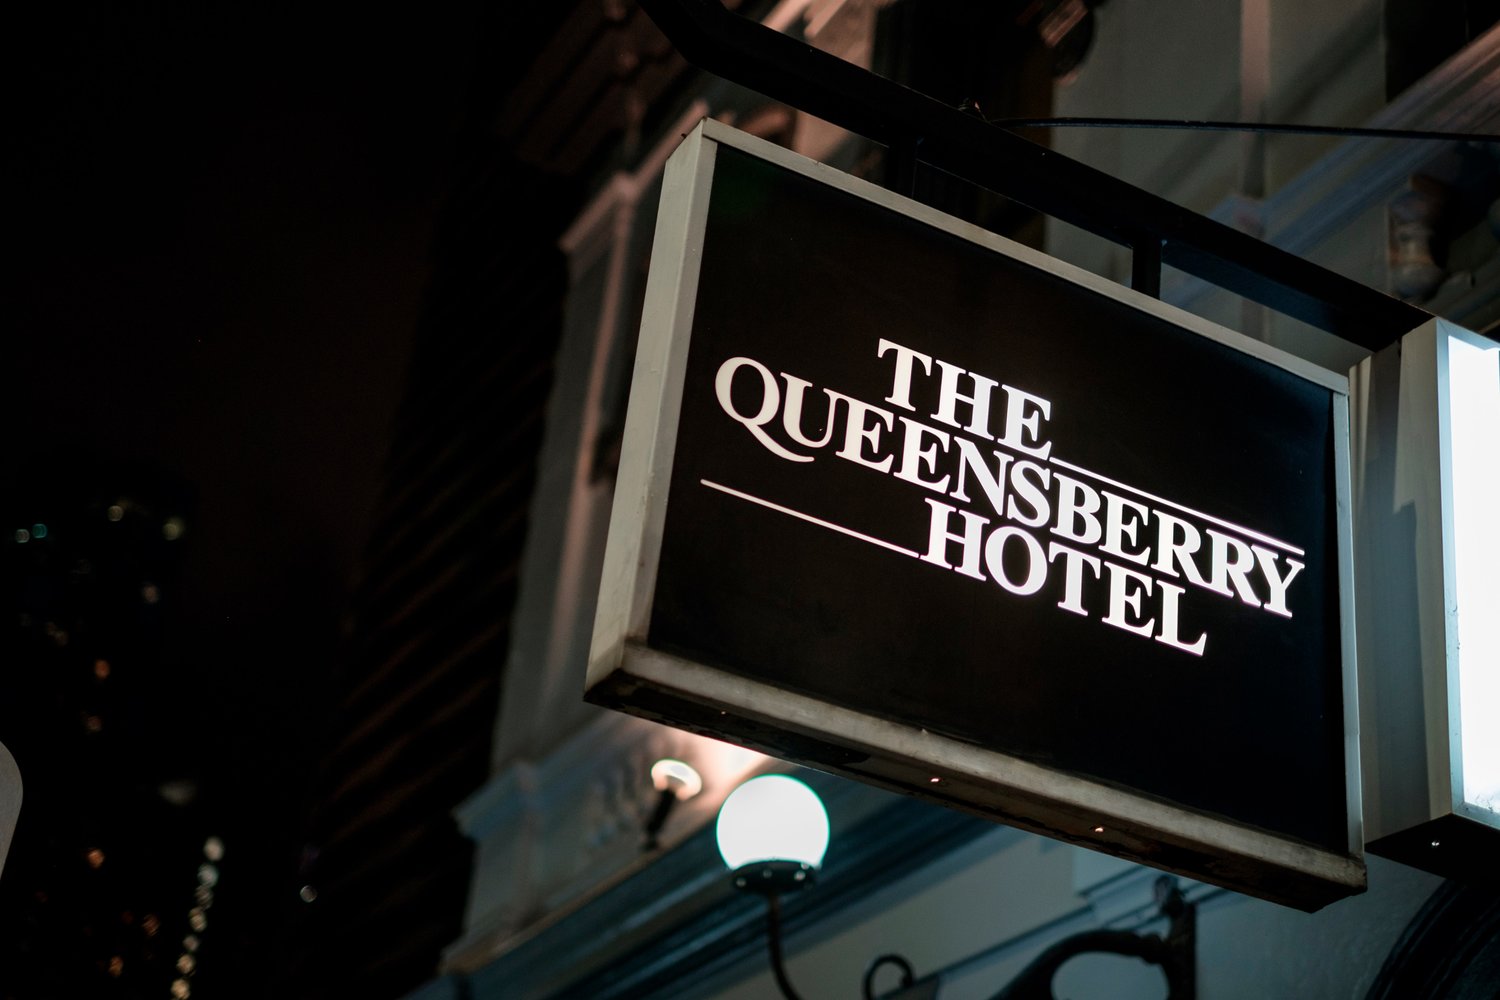 www.queensberryhotel.com.au